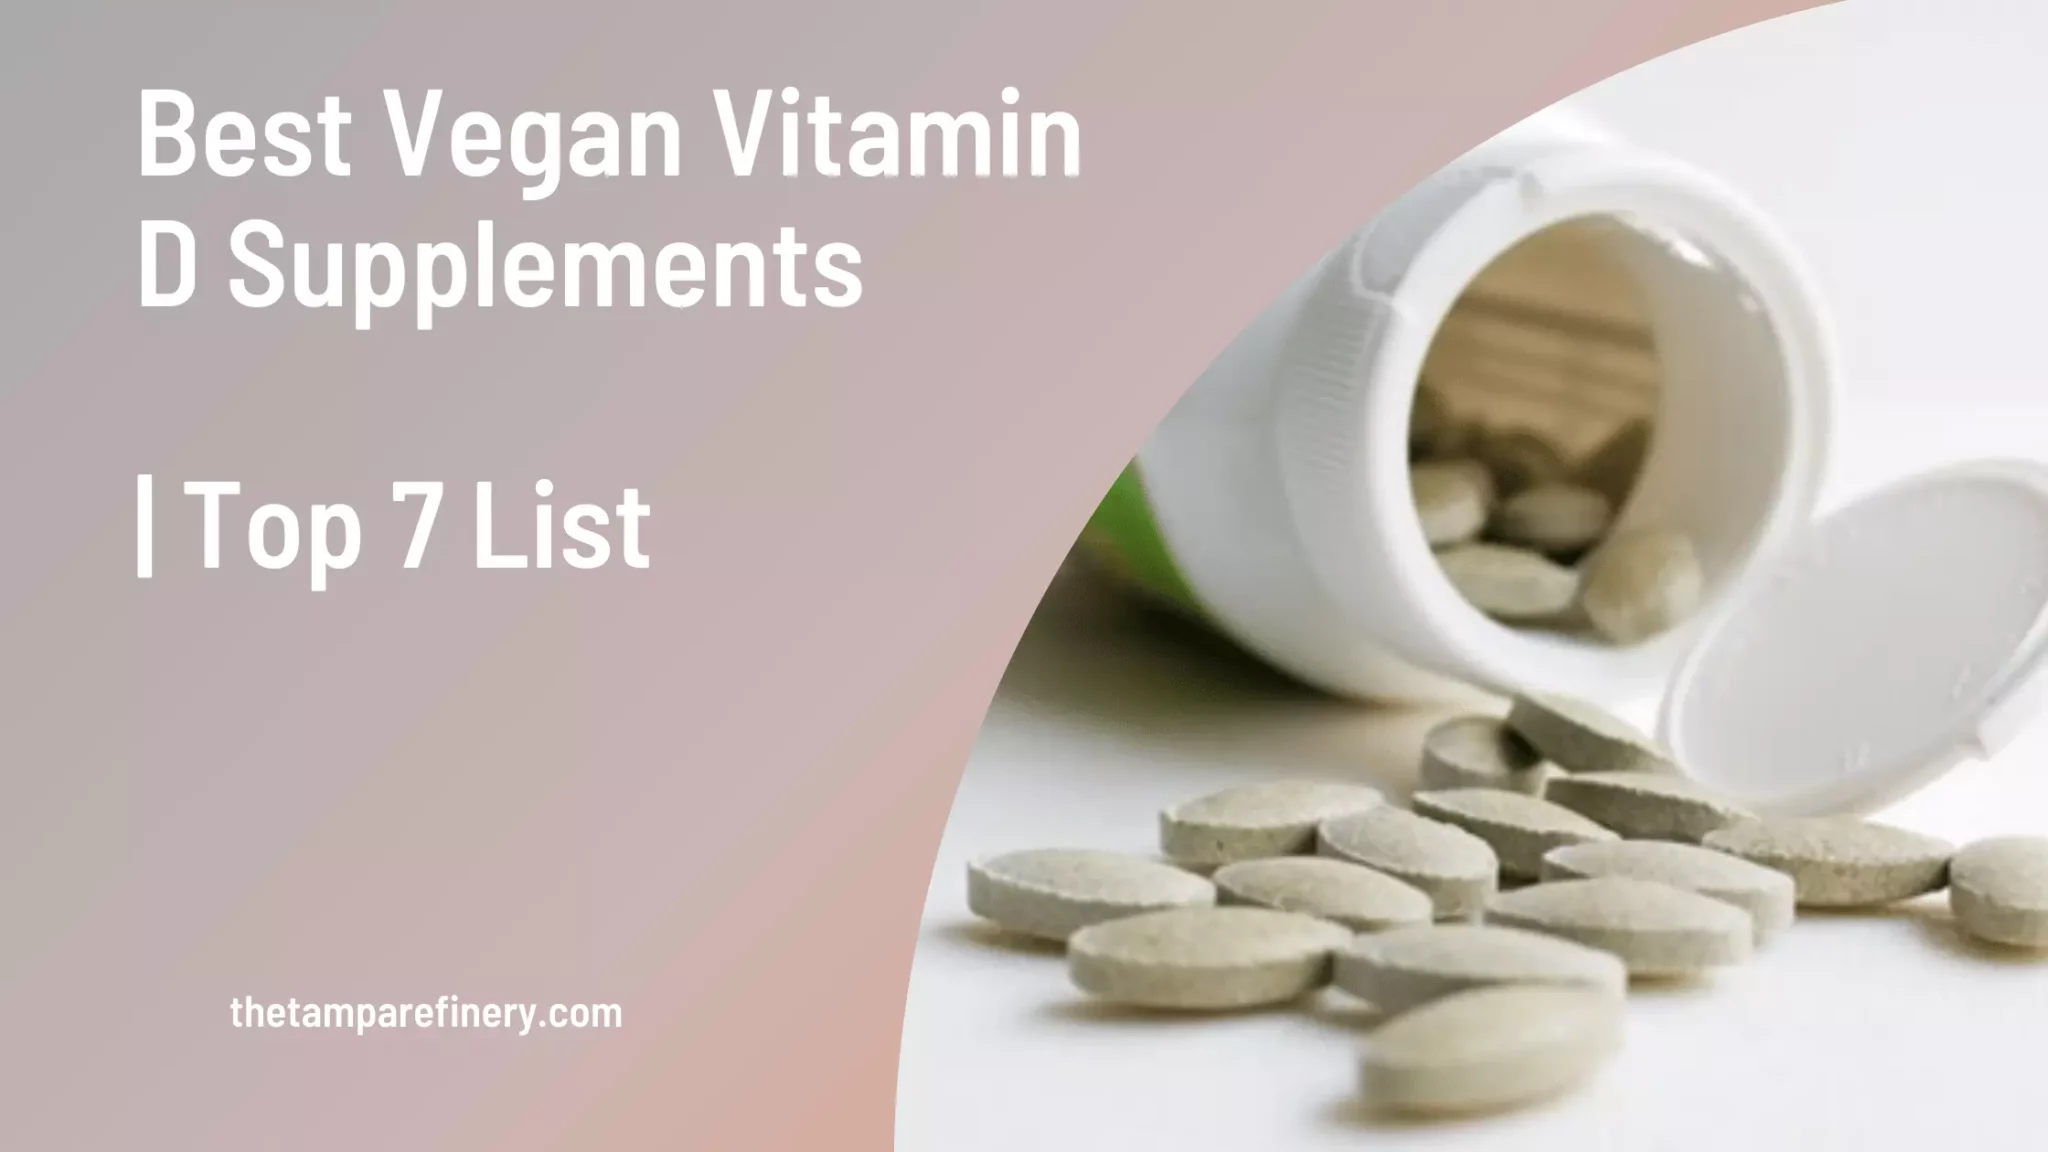 Vegan Vitamin D Supplements